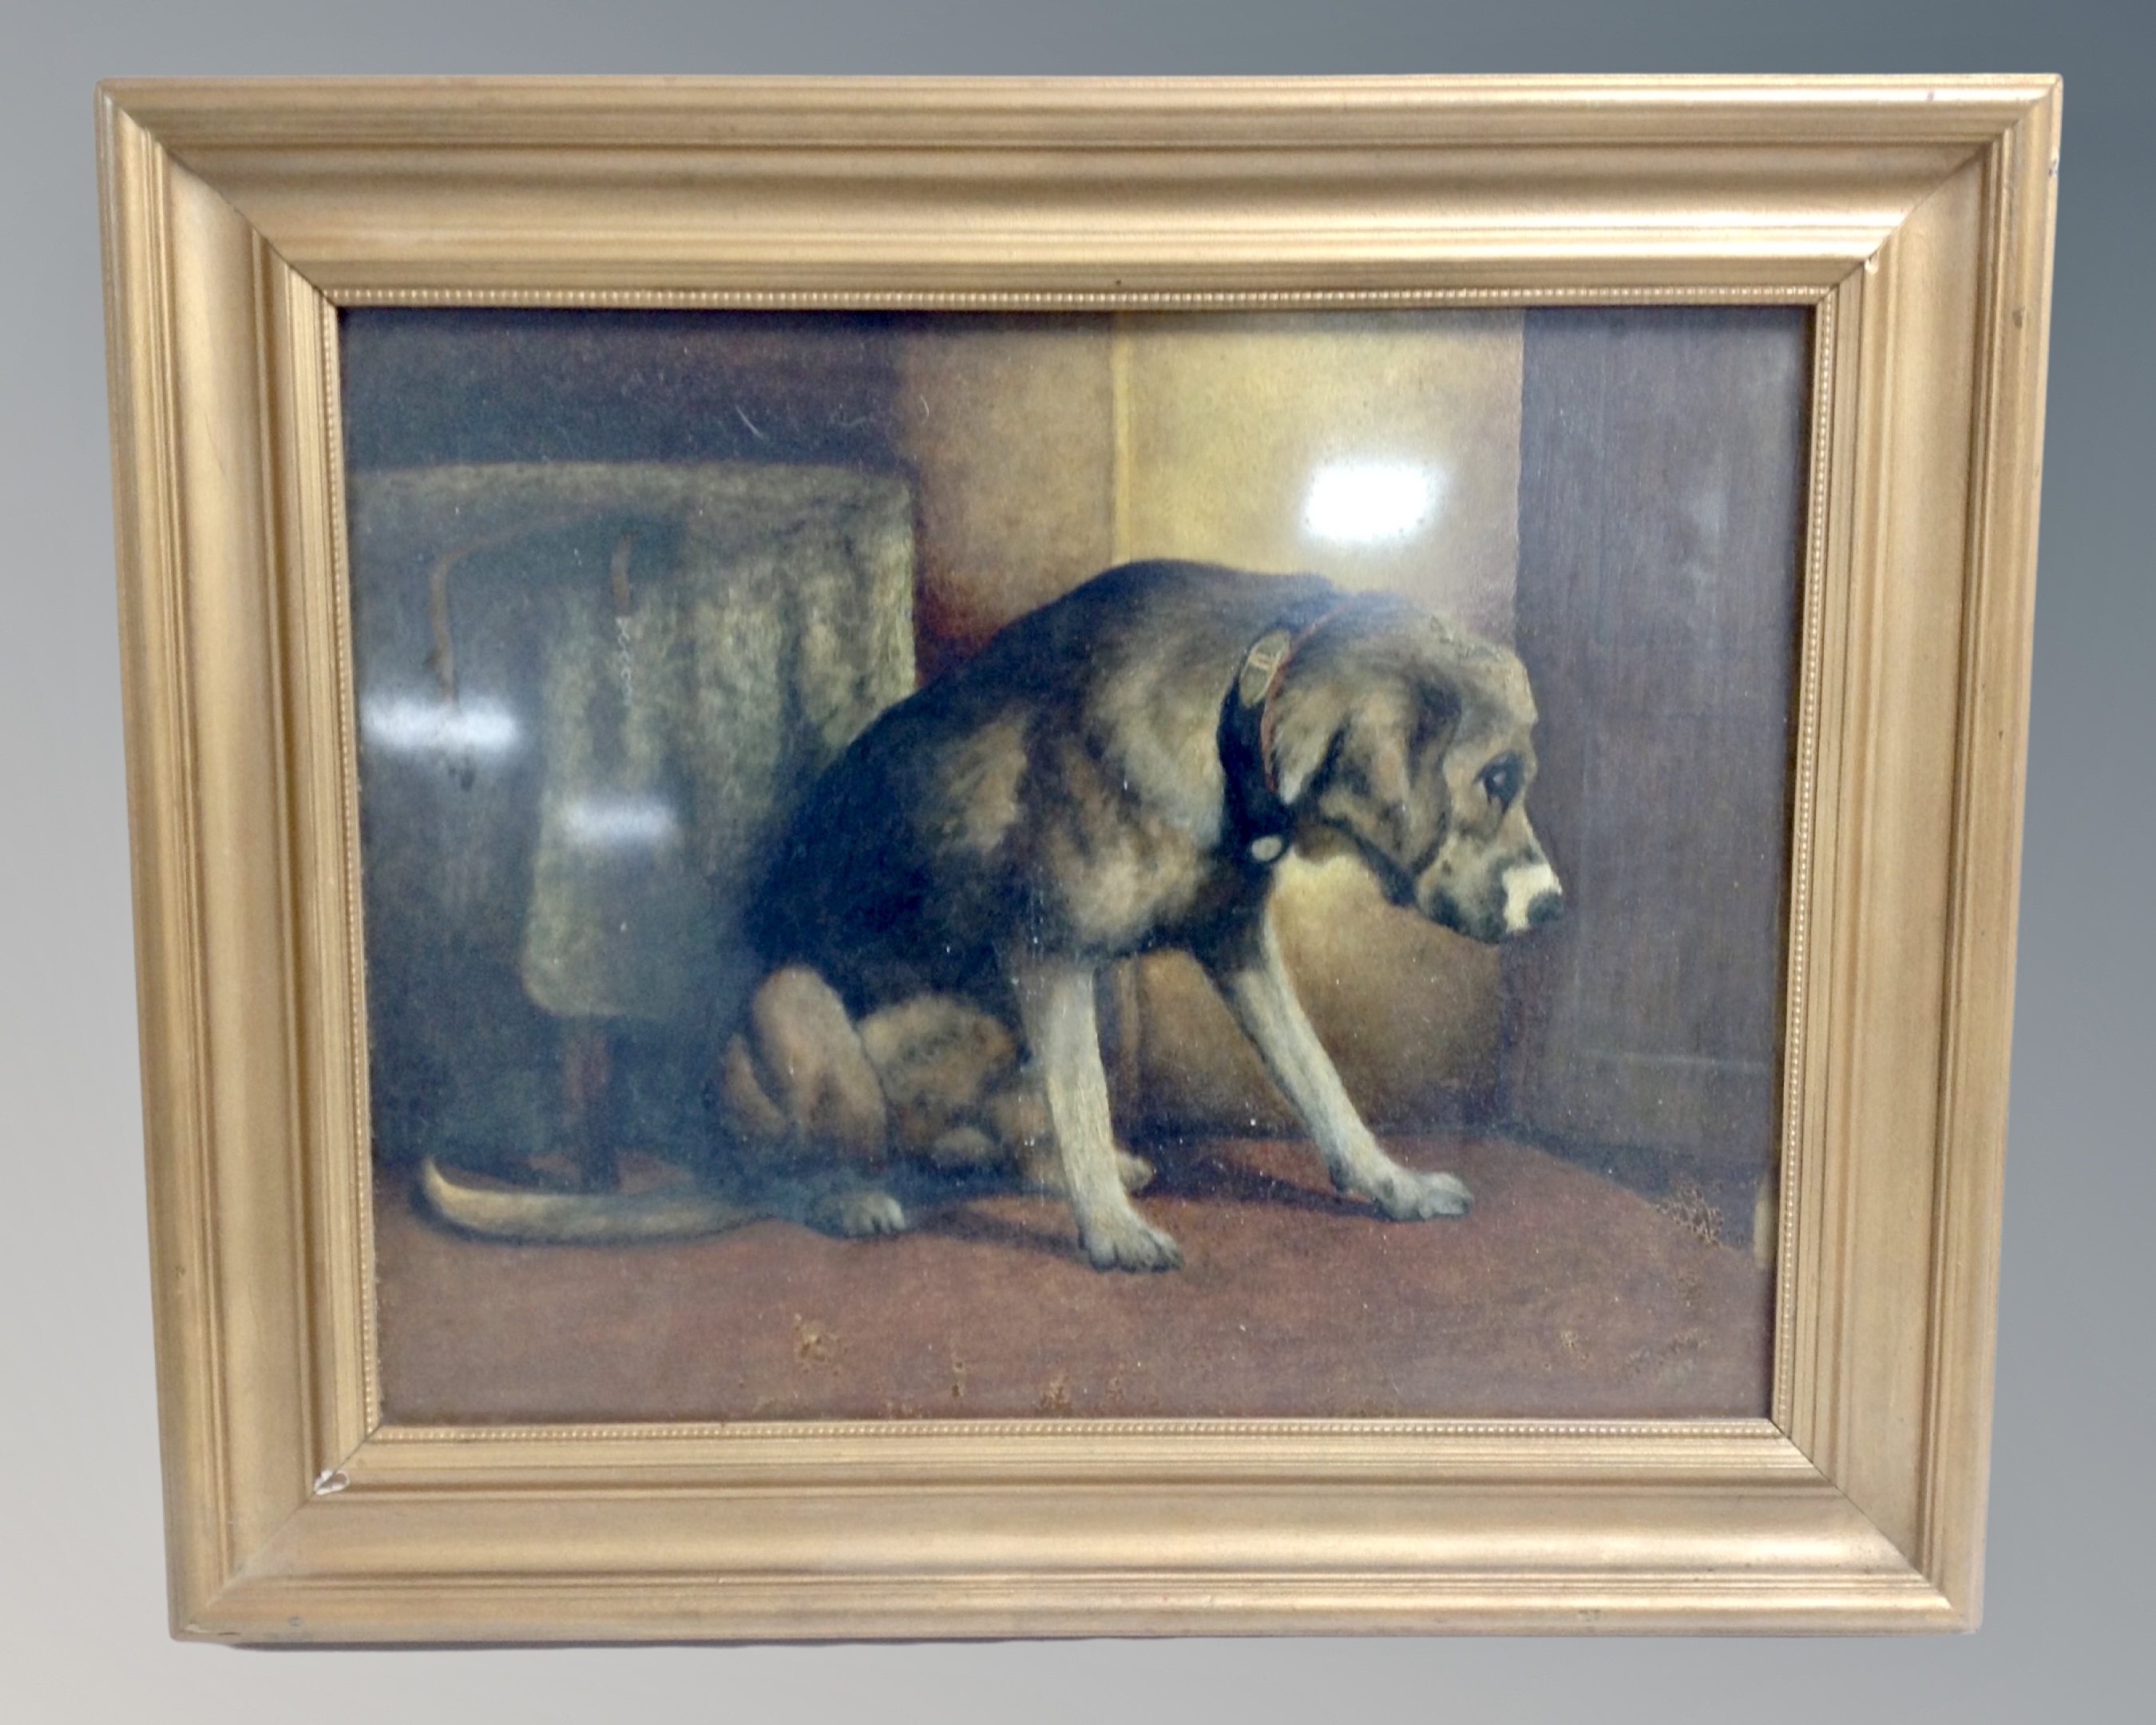 Twentieth century School : Study of a seated dog, oil on board, 45 cm x 35 cm.